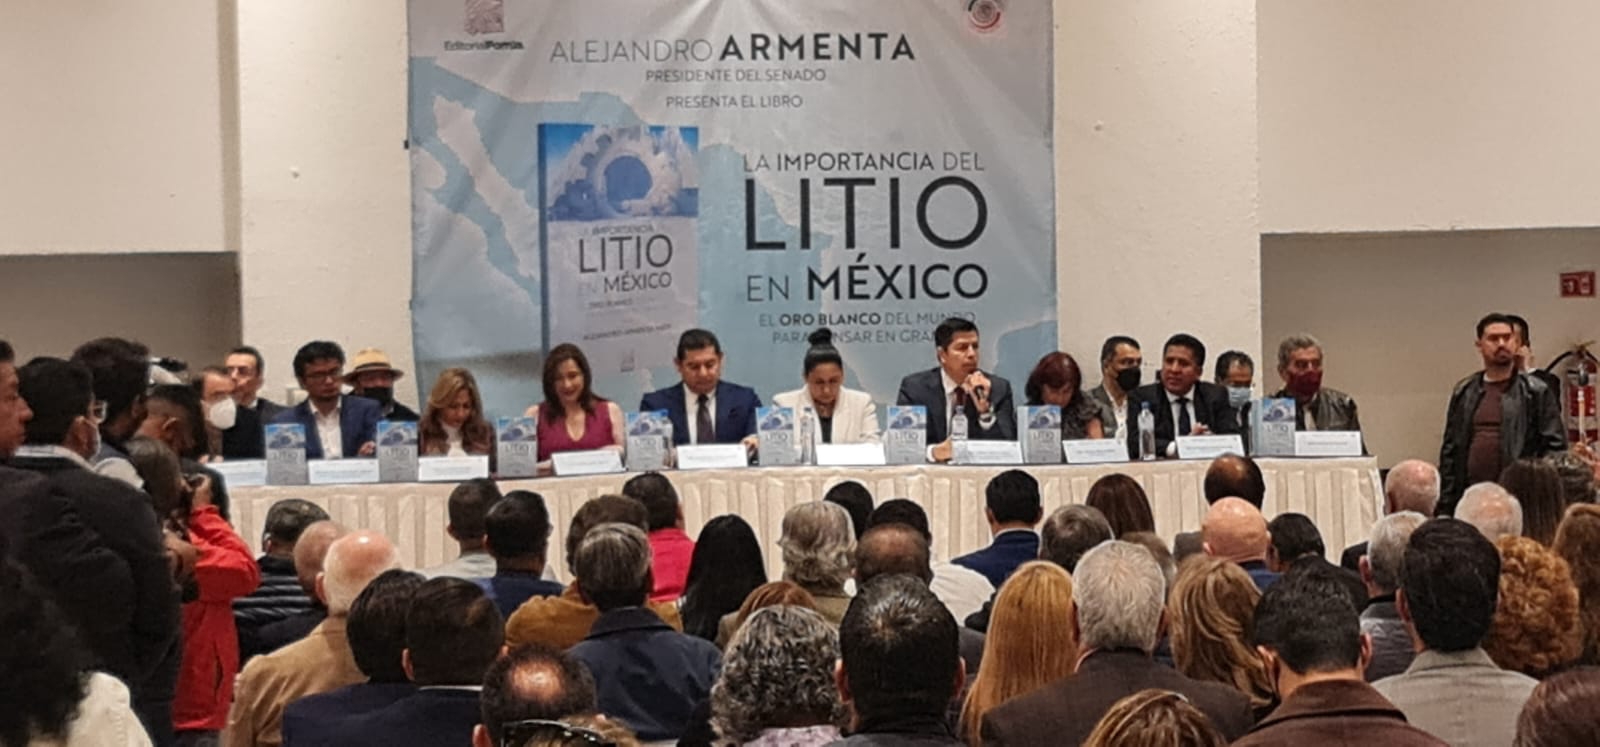 El litio contribuirá con riqueza al desarrollo de México: Alejandro Armenta